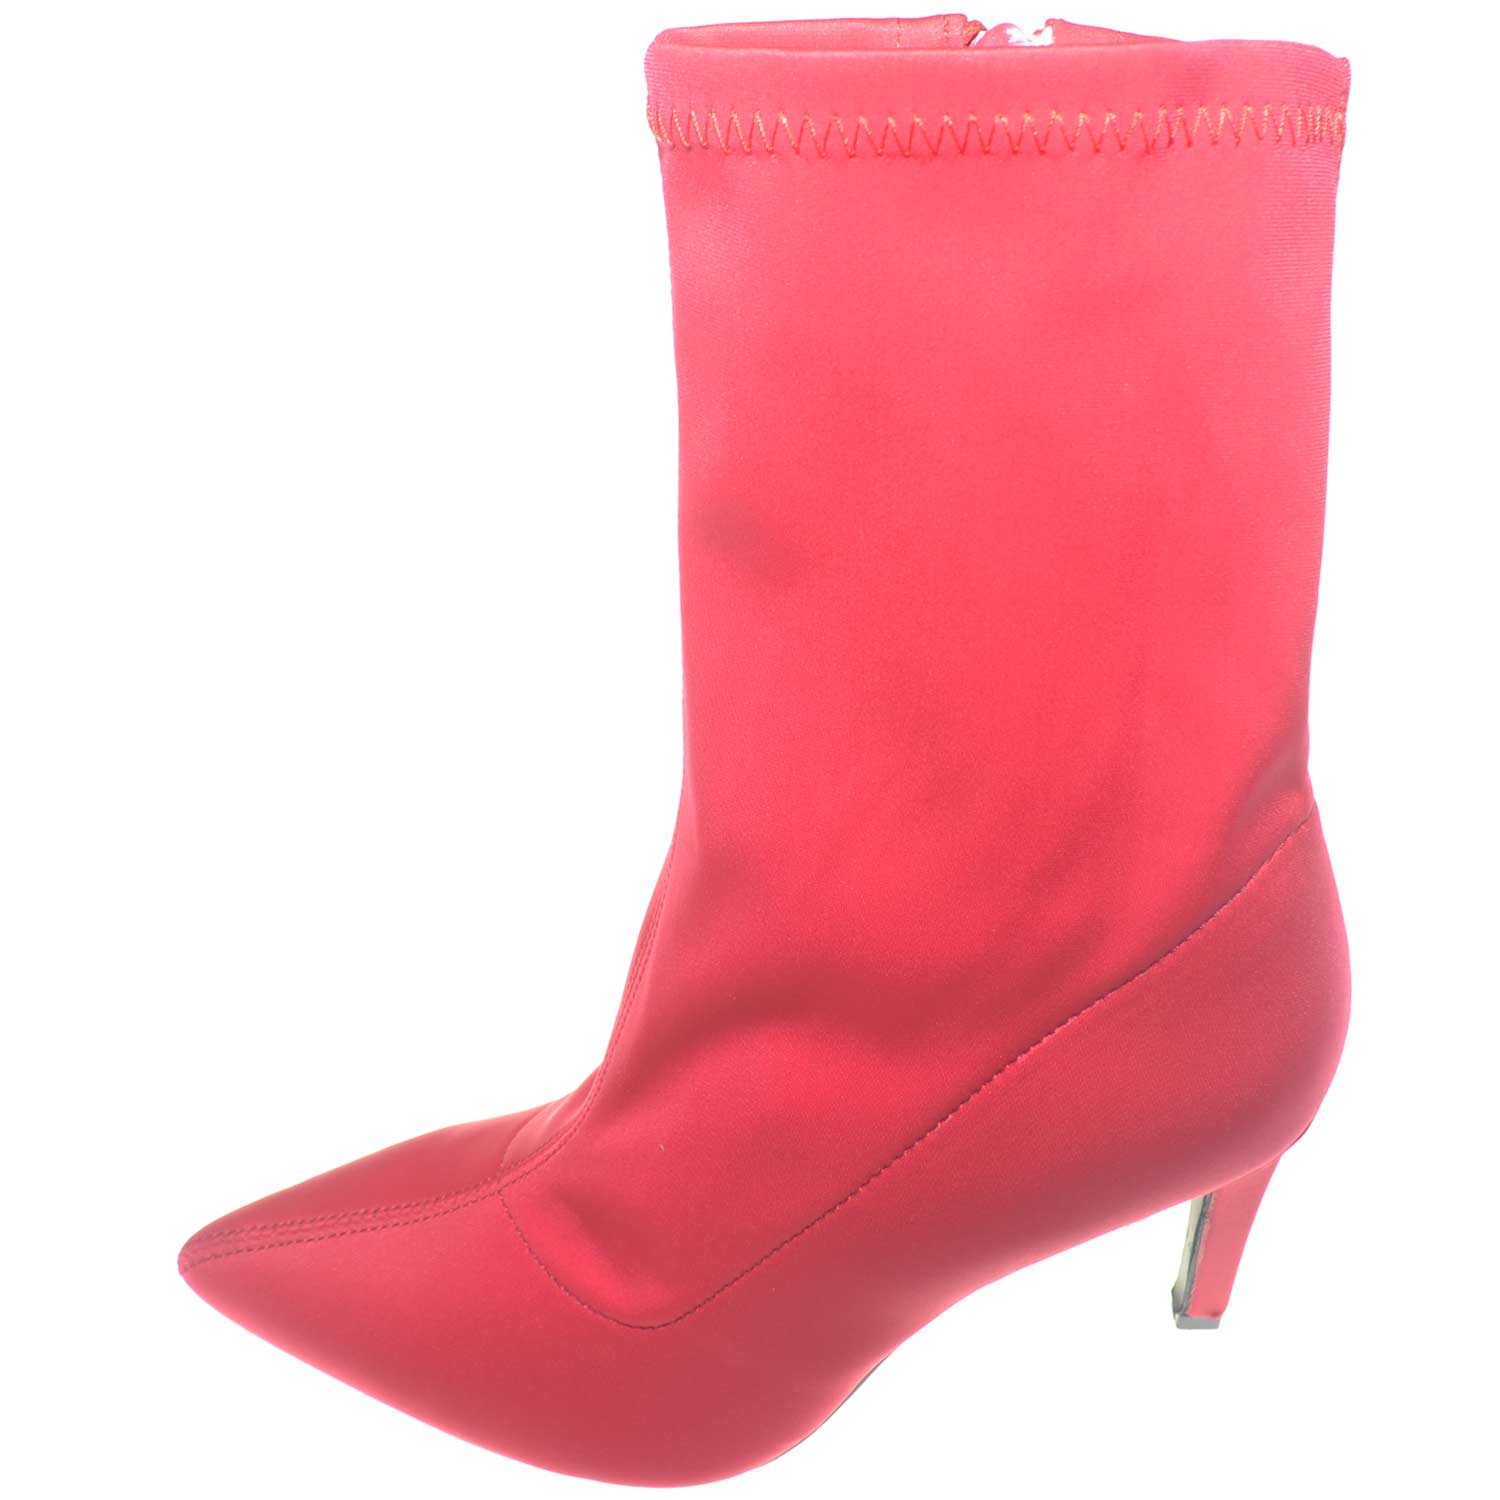 Tronchetto alto rosso a punta calzino in elastene modello bale tacco a spillo comfort glamour moda.